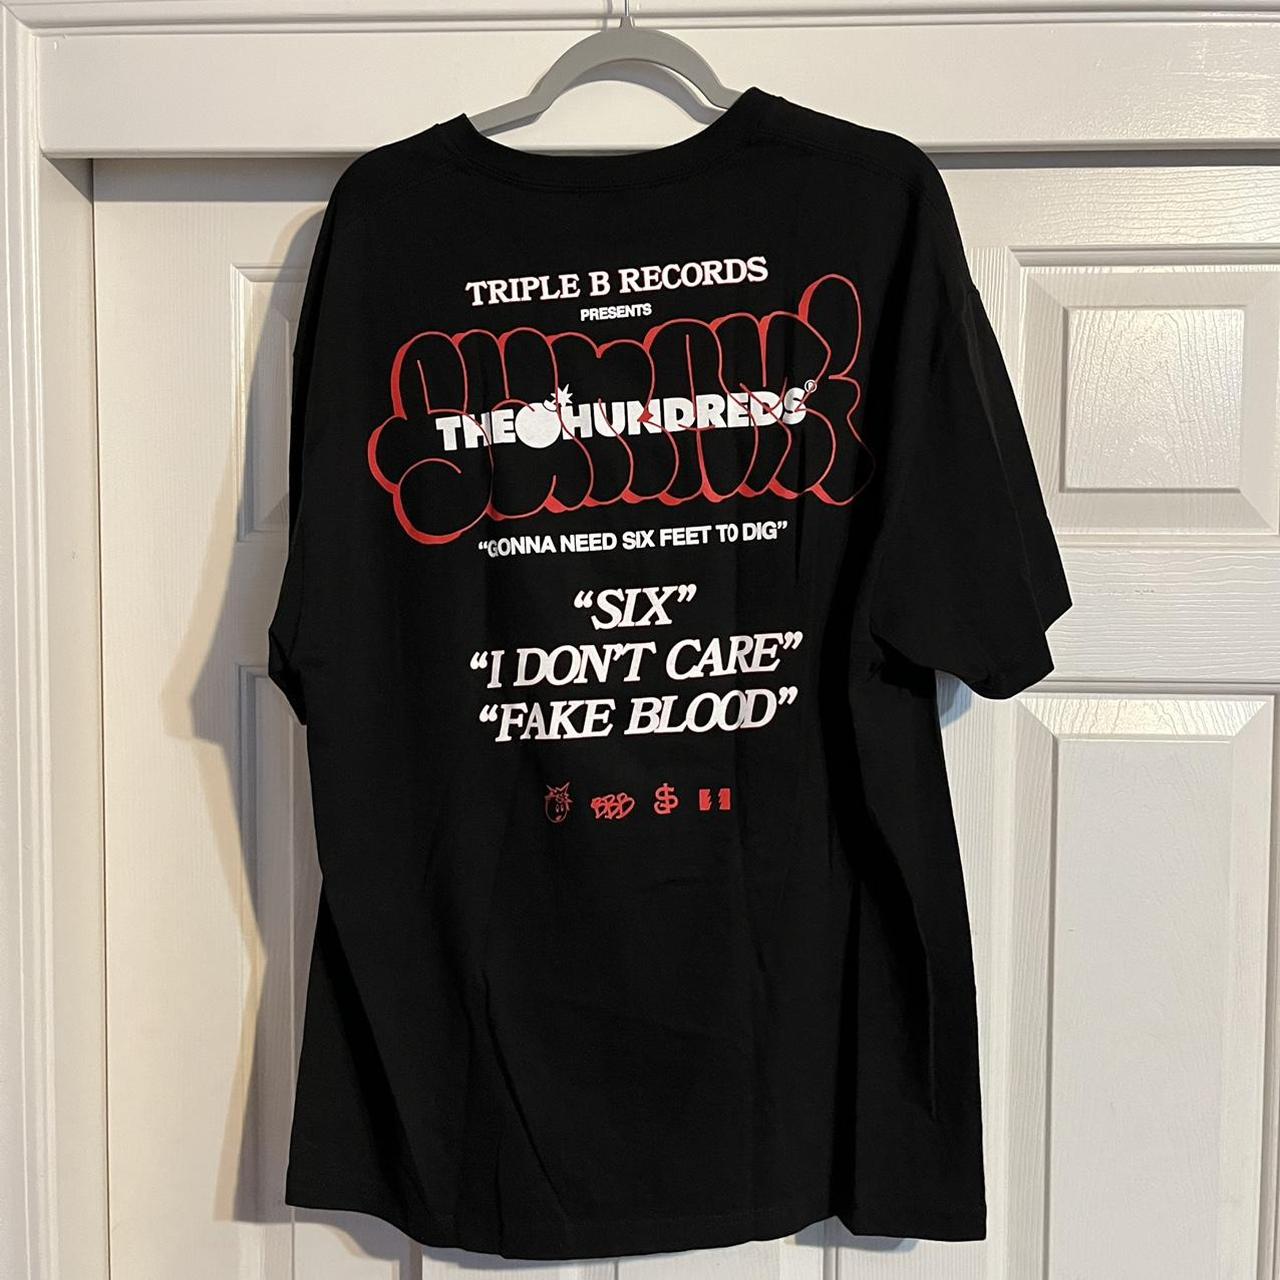 The Hundreds Men's T-shirt (2)